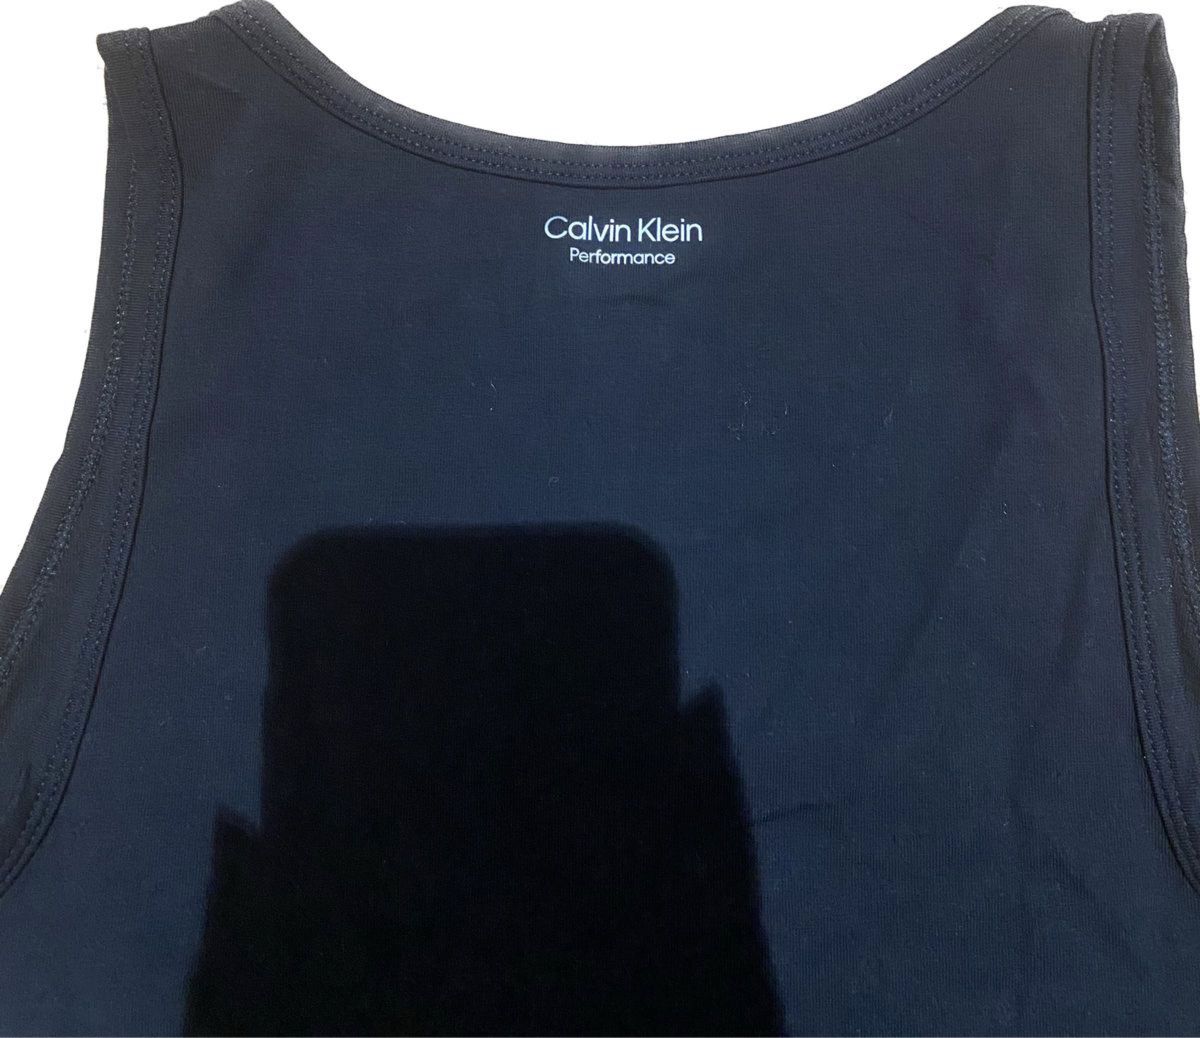 海外購入/新品未使用/タグ付き】Calvin Klein Performance カルバン